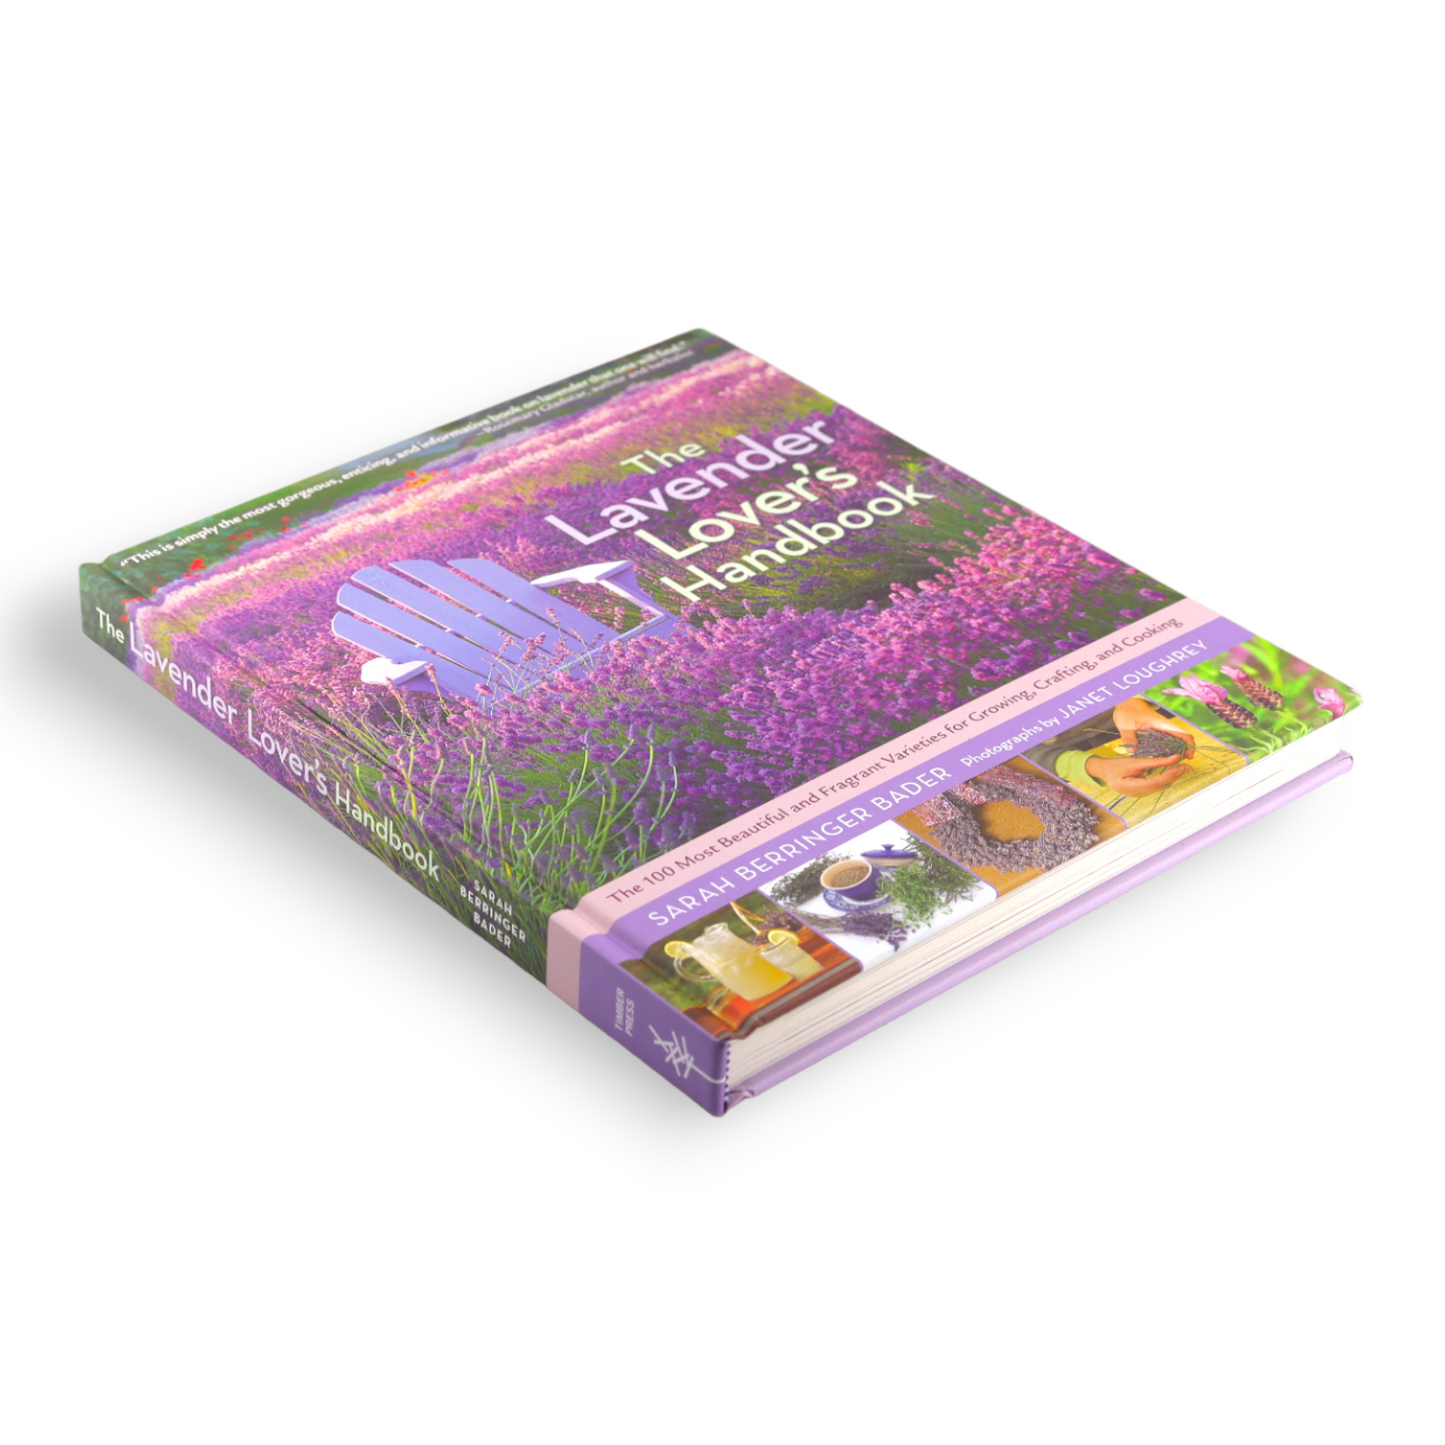 Lavender Lover's Handbook